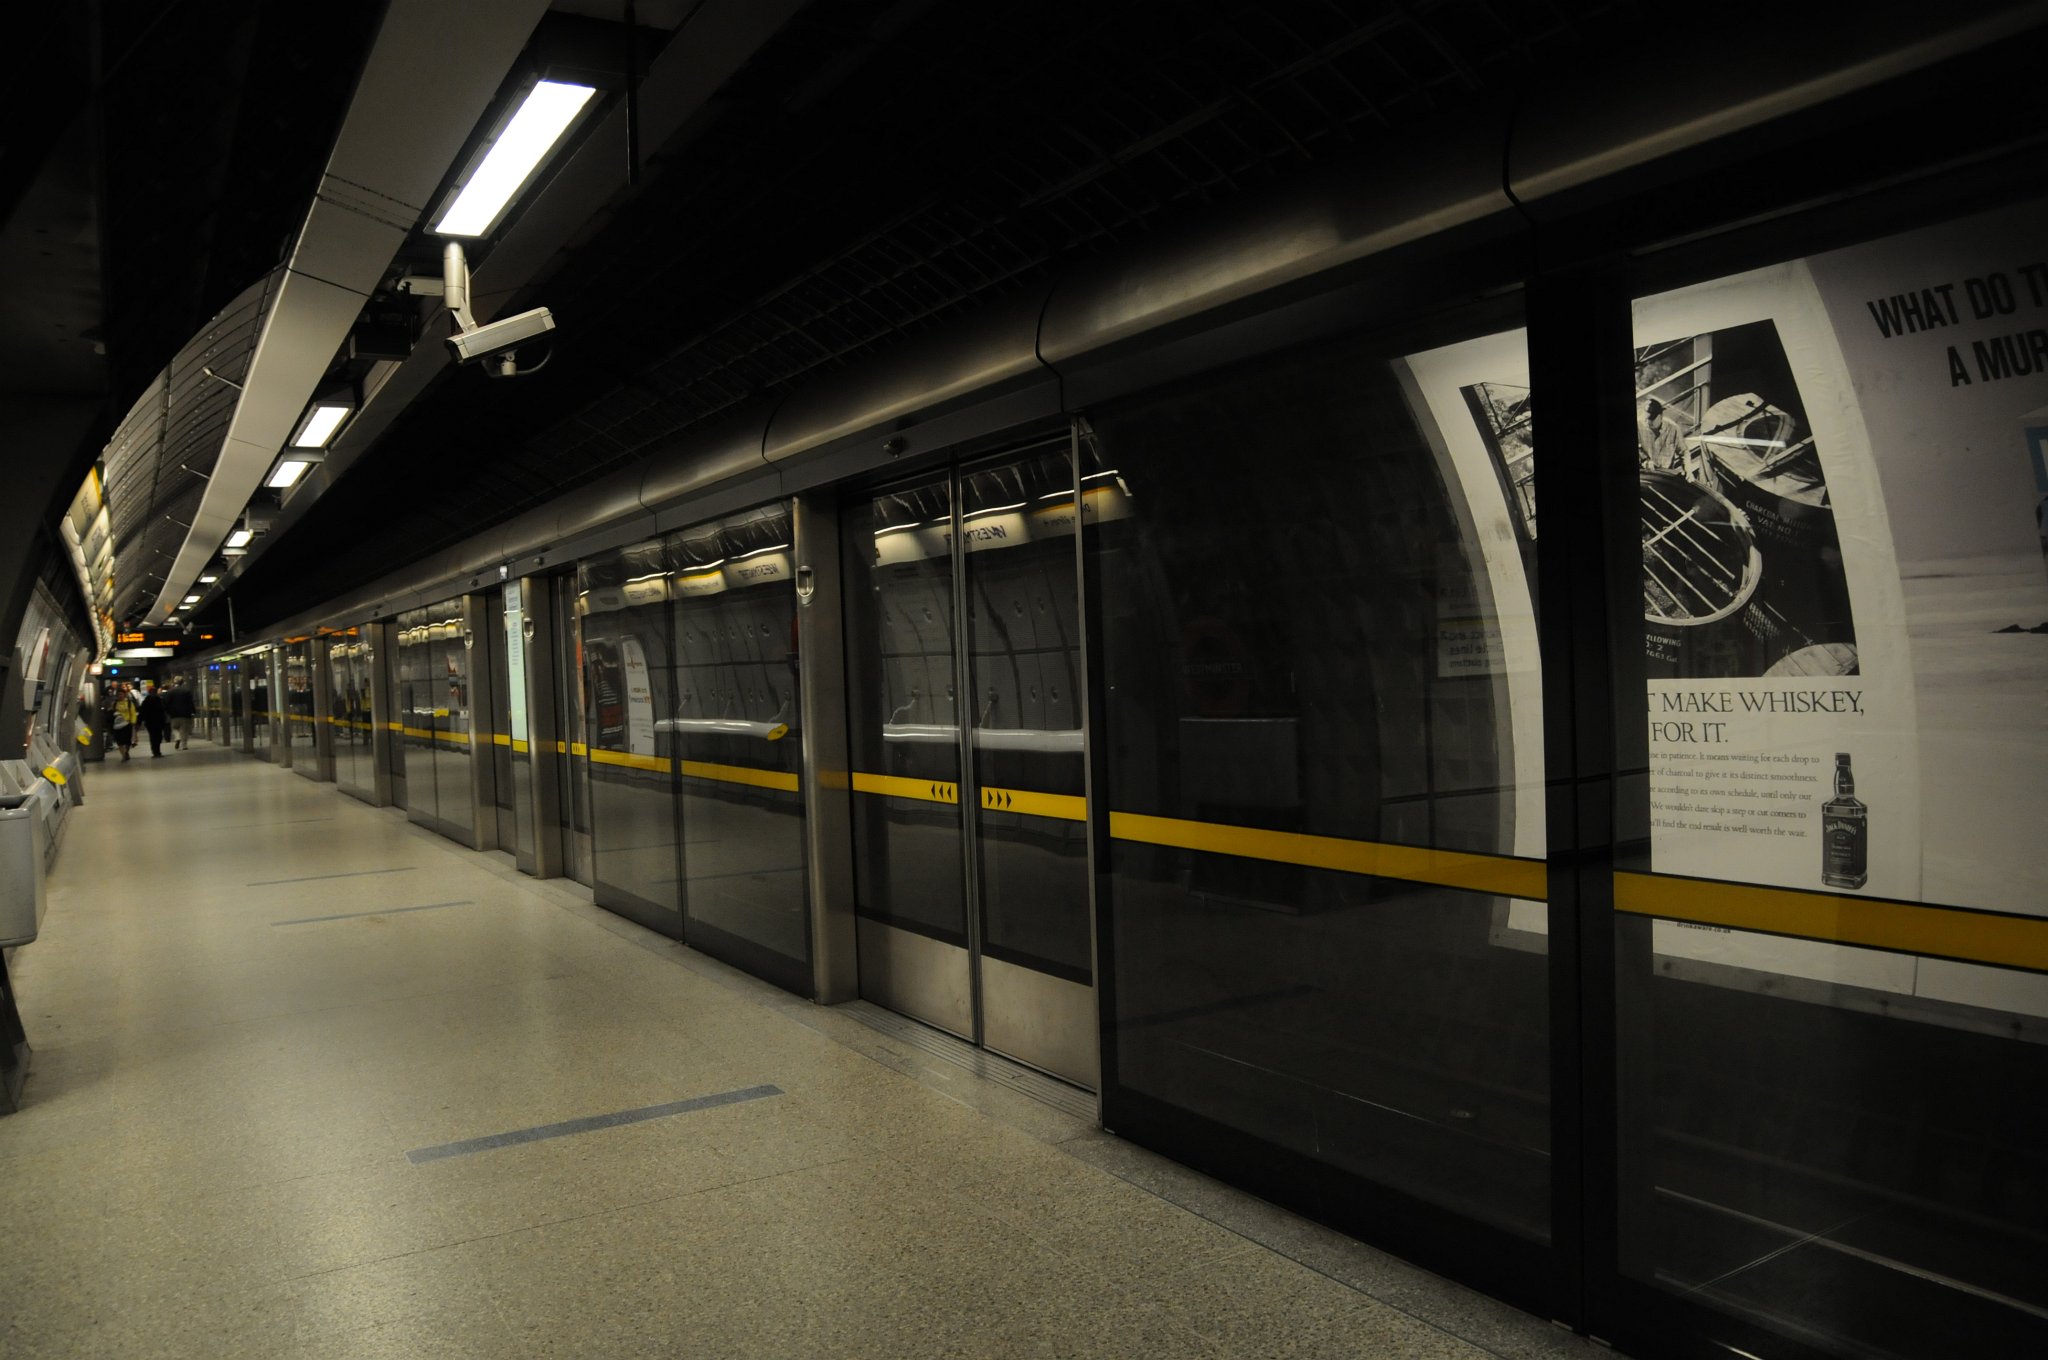 DSC_3393.JPG - Nástupiště Jubilee Line na stanici metra Westminster. Tato stanice obsluhuje tři různé linky. Stanice byla otevřena pod názvem „Westminster Bridge“ 24. prosince 1868 jako součást Metropolitan District Railway (dnešní Circle a District Line). Svůj současný název, „Westminster“, získala v roce 1907.  Mimo jiné se ve stanici nacházejí skleněné zábrany mezi nástupišťem a kolejnicemi, ty byly instalovány v souladu se snahou kontrolovat cirkulaci vzduchu ve stanici a taktéž pro zvýšení bezpečnosti cestujících. Nástupiště se nacházejí v hloubce 32 metrů; jsou jedny z nejhlouběji položených v celé síti londýnského metra. Kvůli omezenému prostoru se i nástupiště Jubilee Line nacházejí nad sebou a ne vedle sebe, jak je obvyklé.